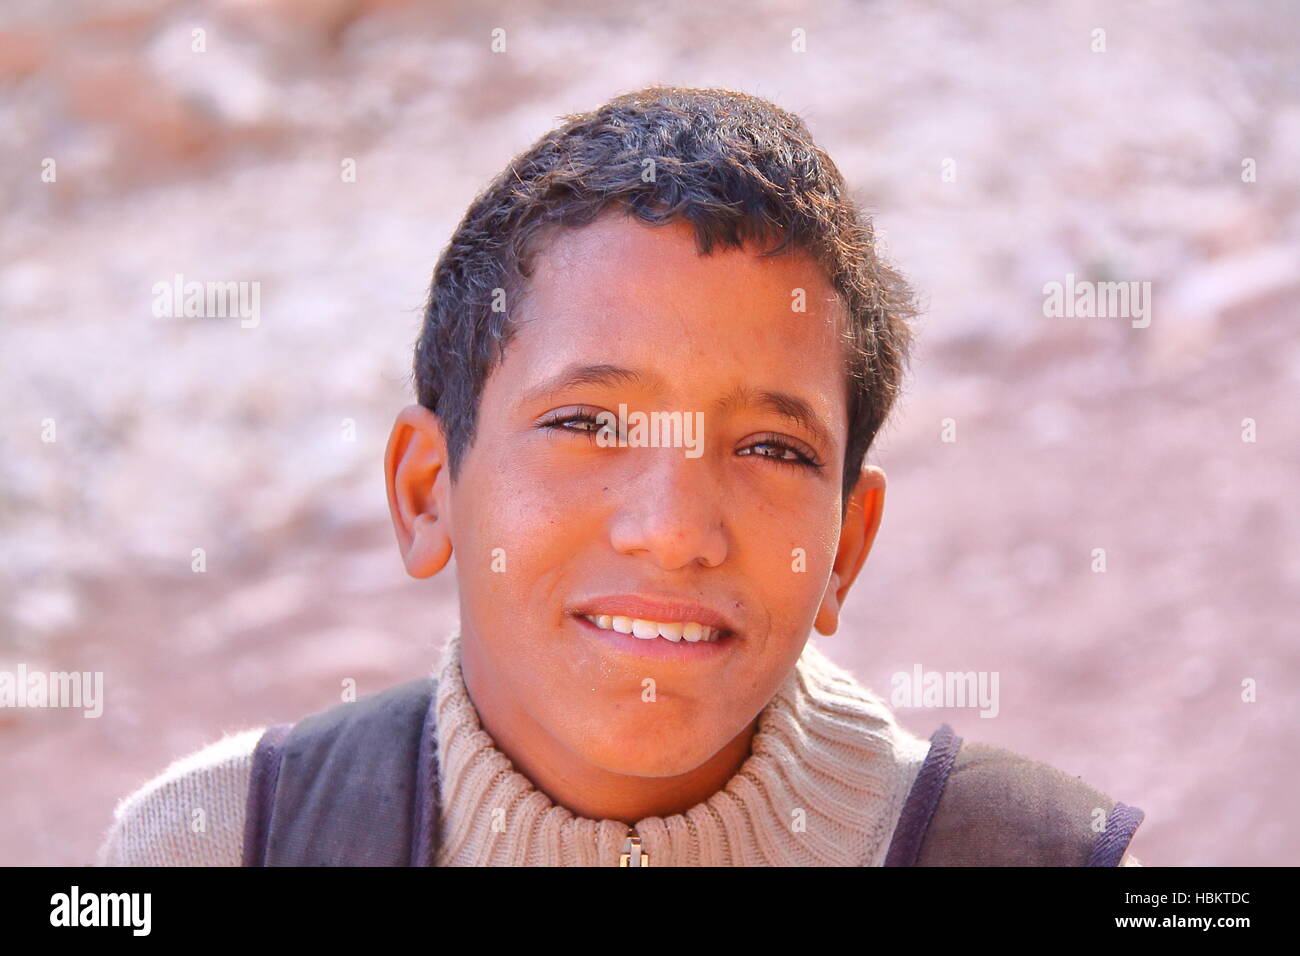 PETRA, Jordanie : Portrait d'un jeune garçon bédouin Banque D'Images